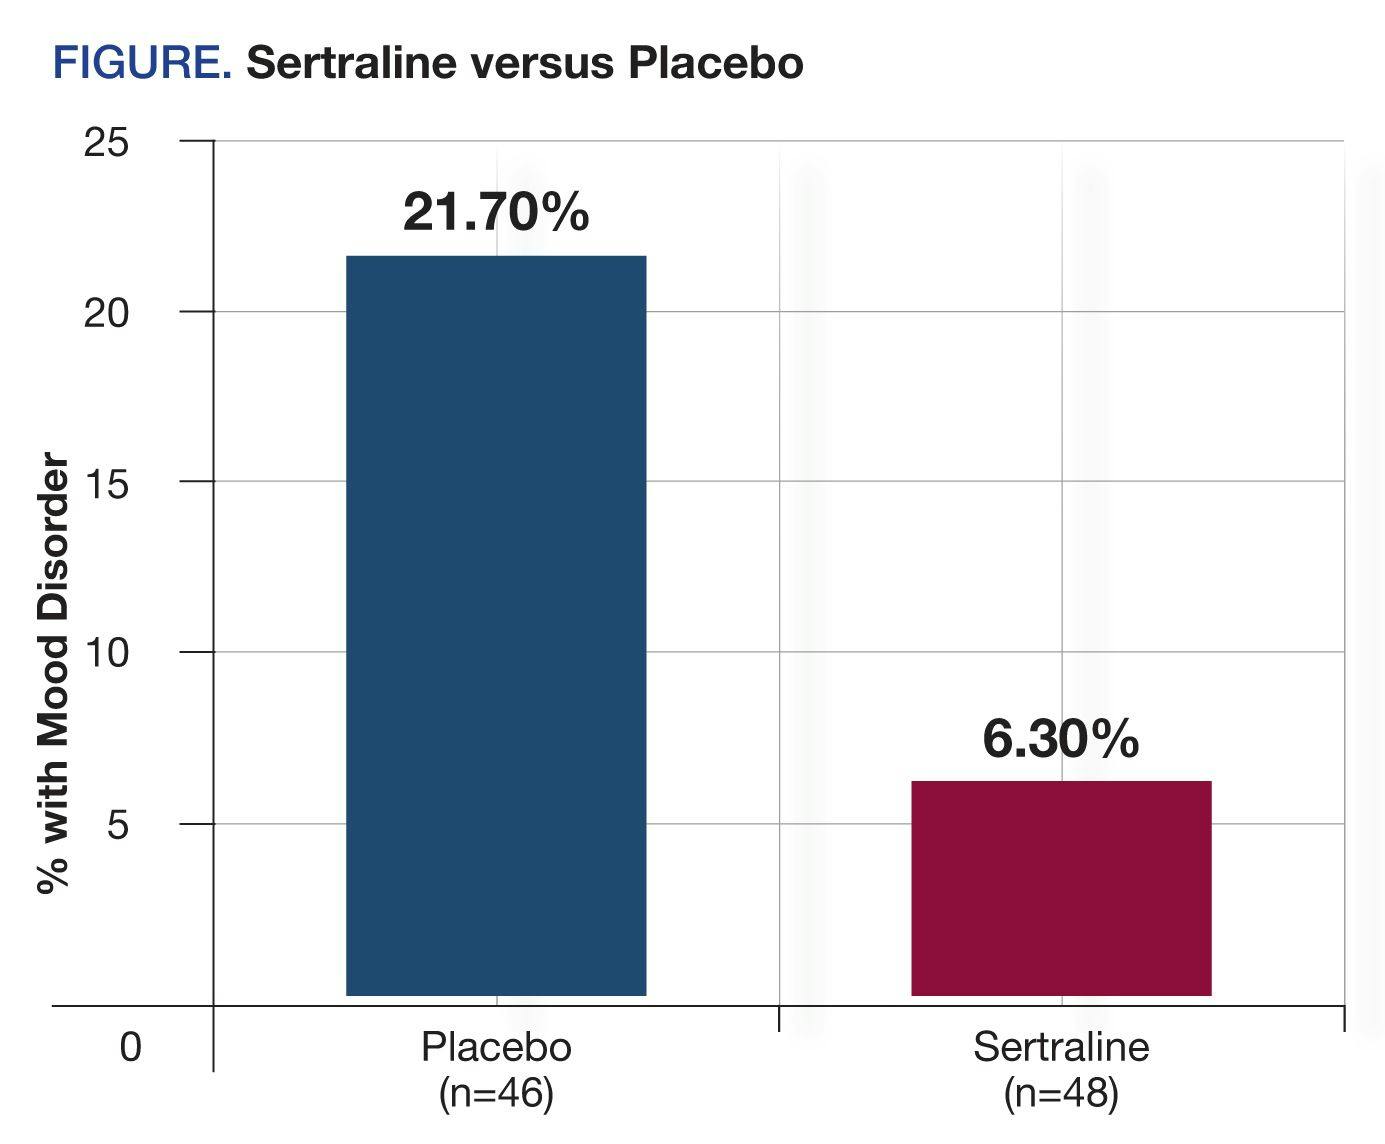 Sertraline versus Placebo